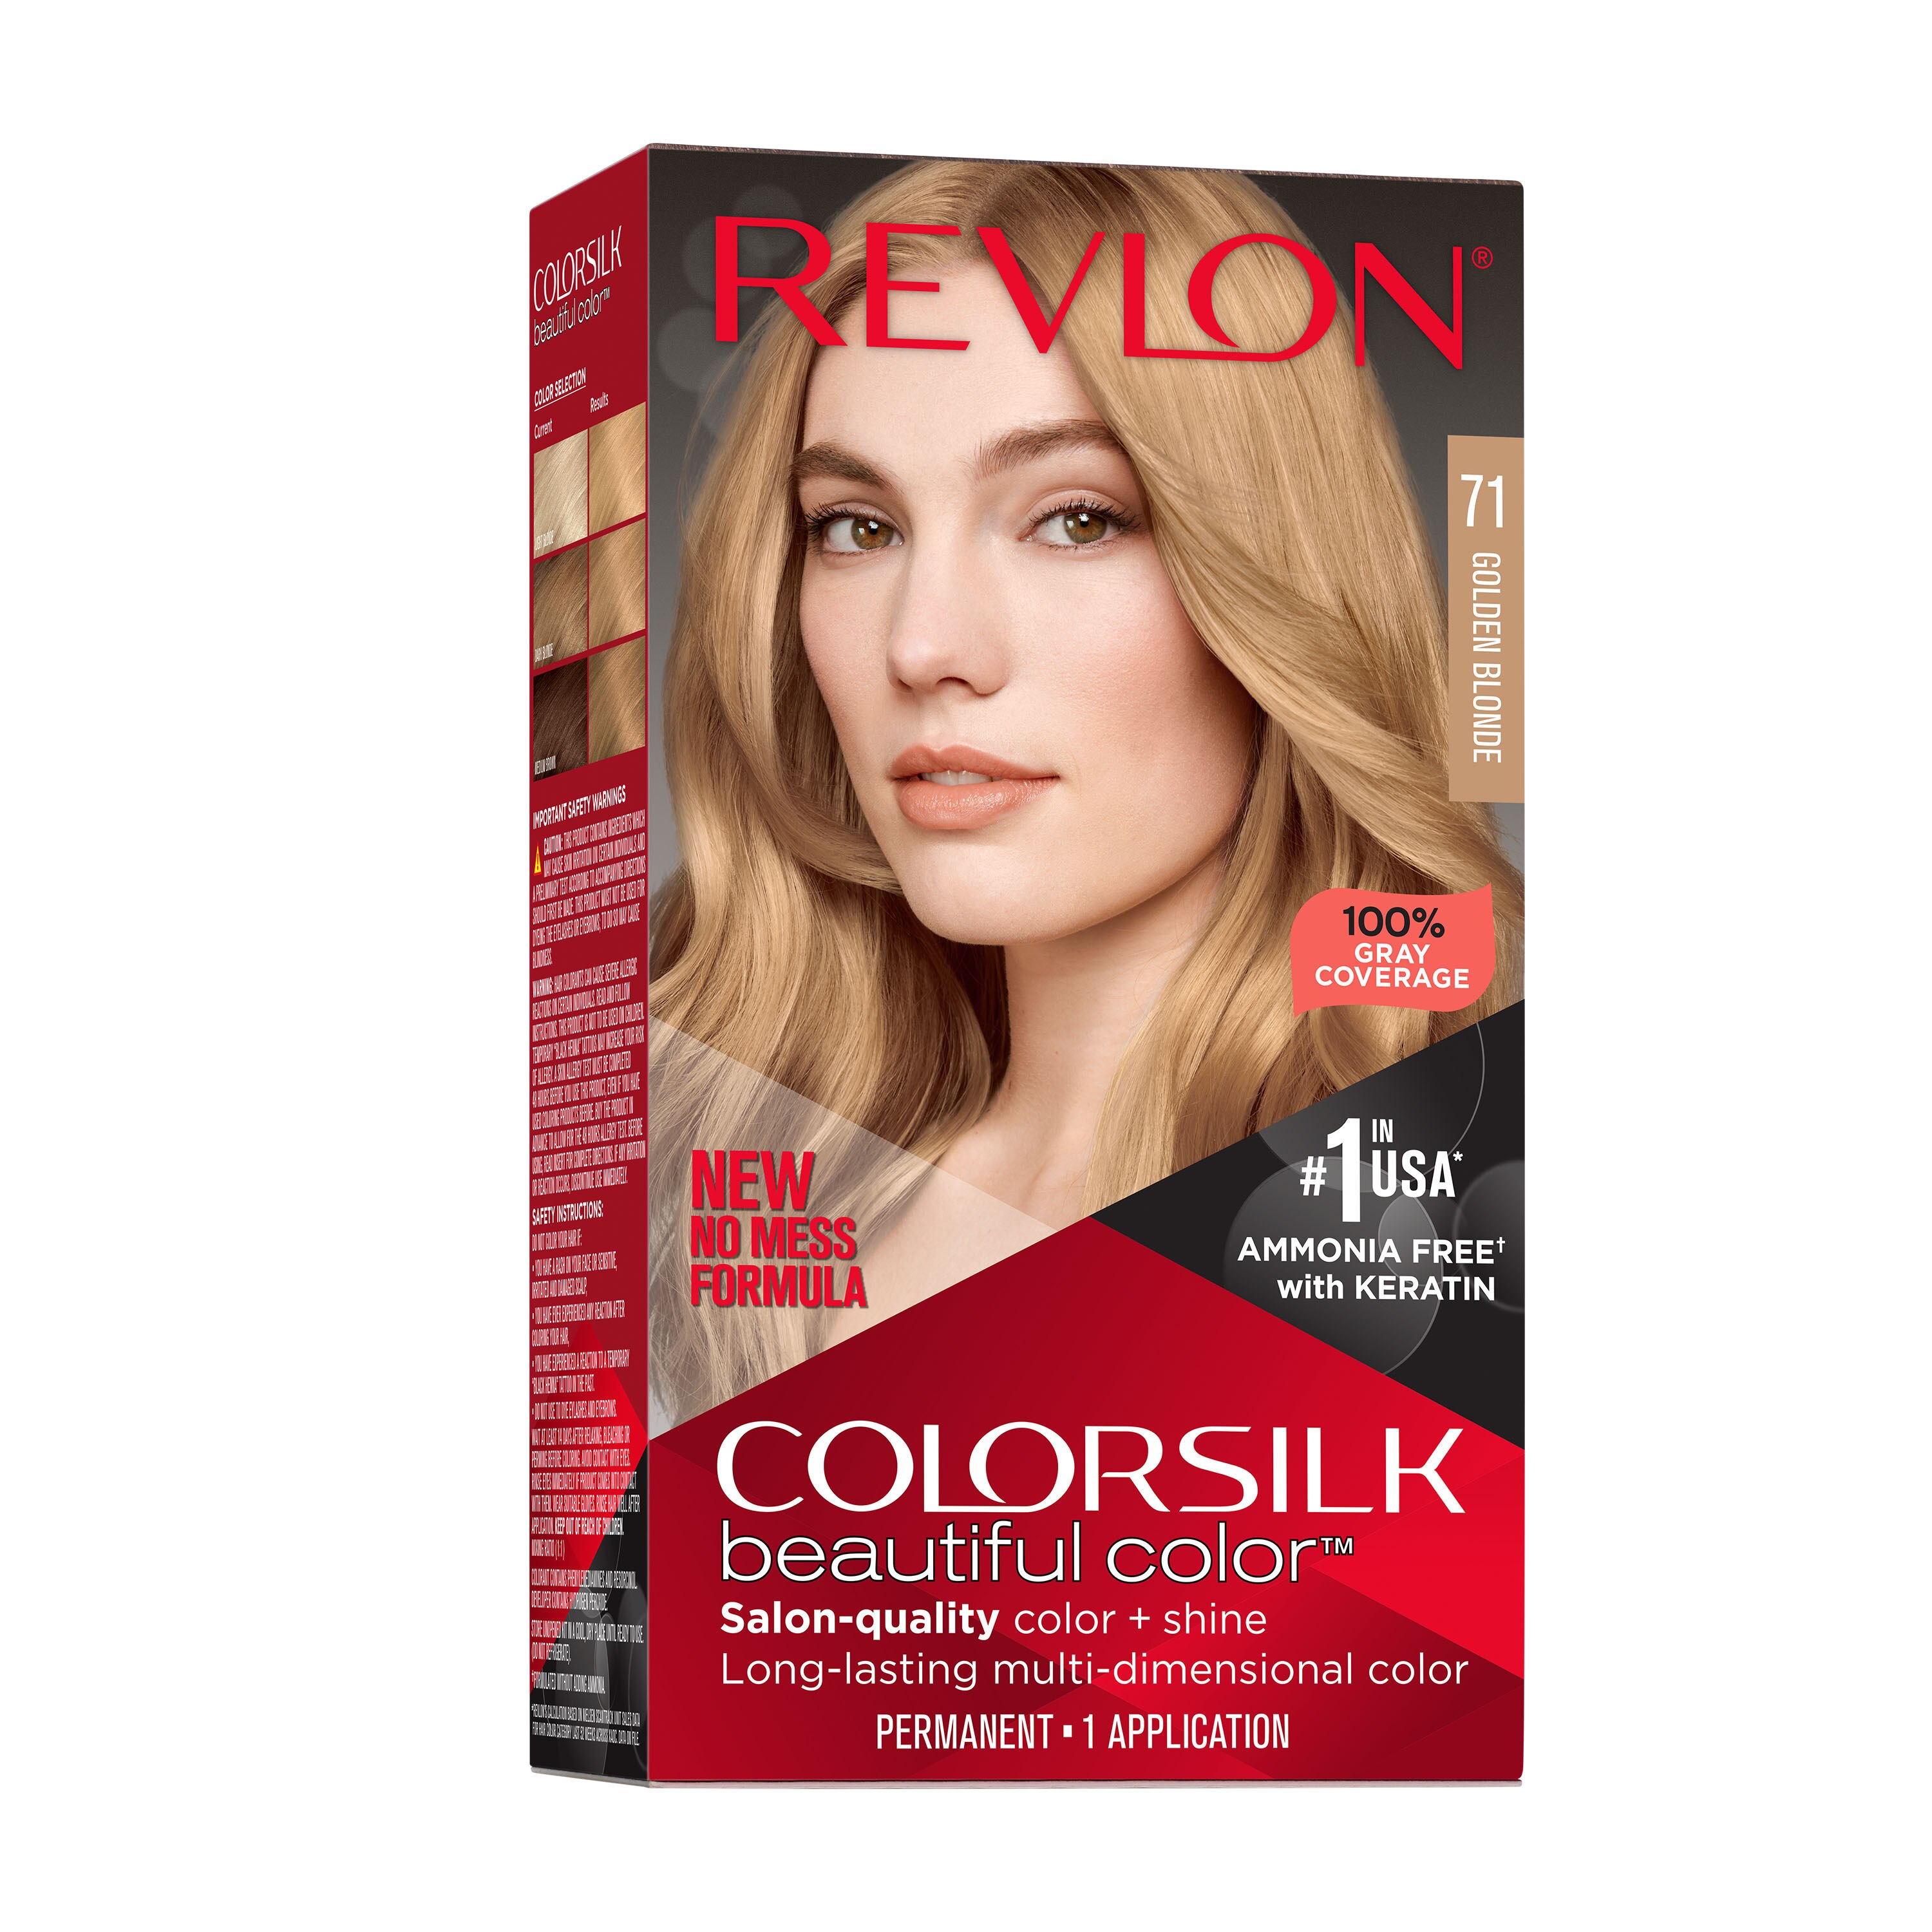 Revlon Colorsilk Beautiful Color Permanent Hair Color, 071 Golden Blonde , CVS